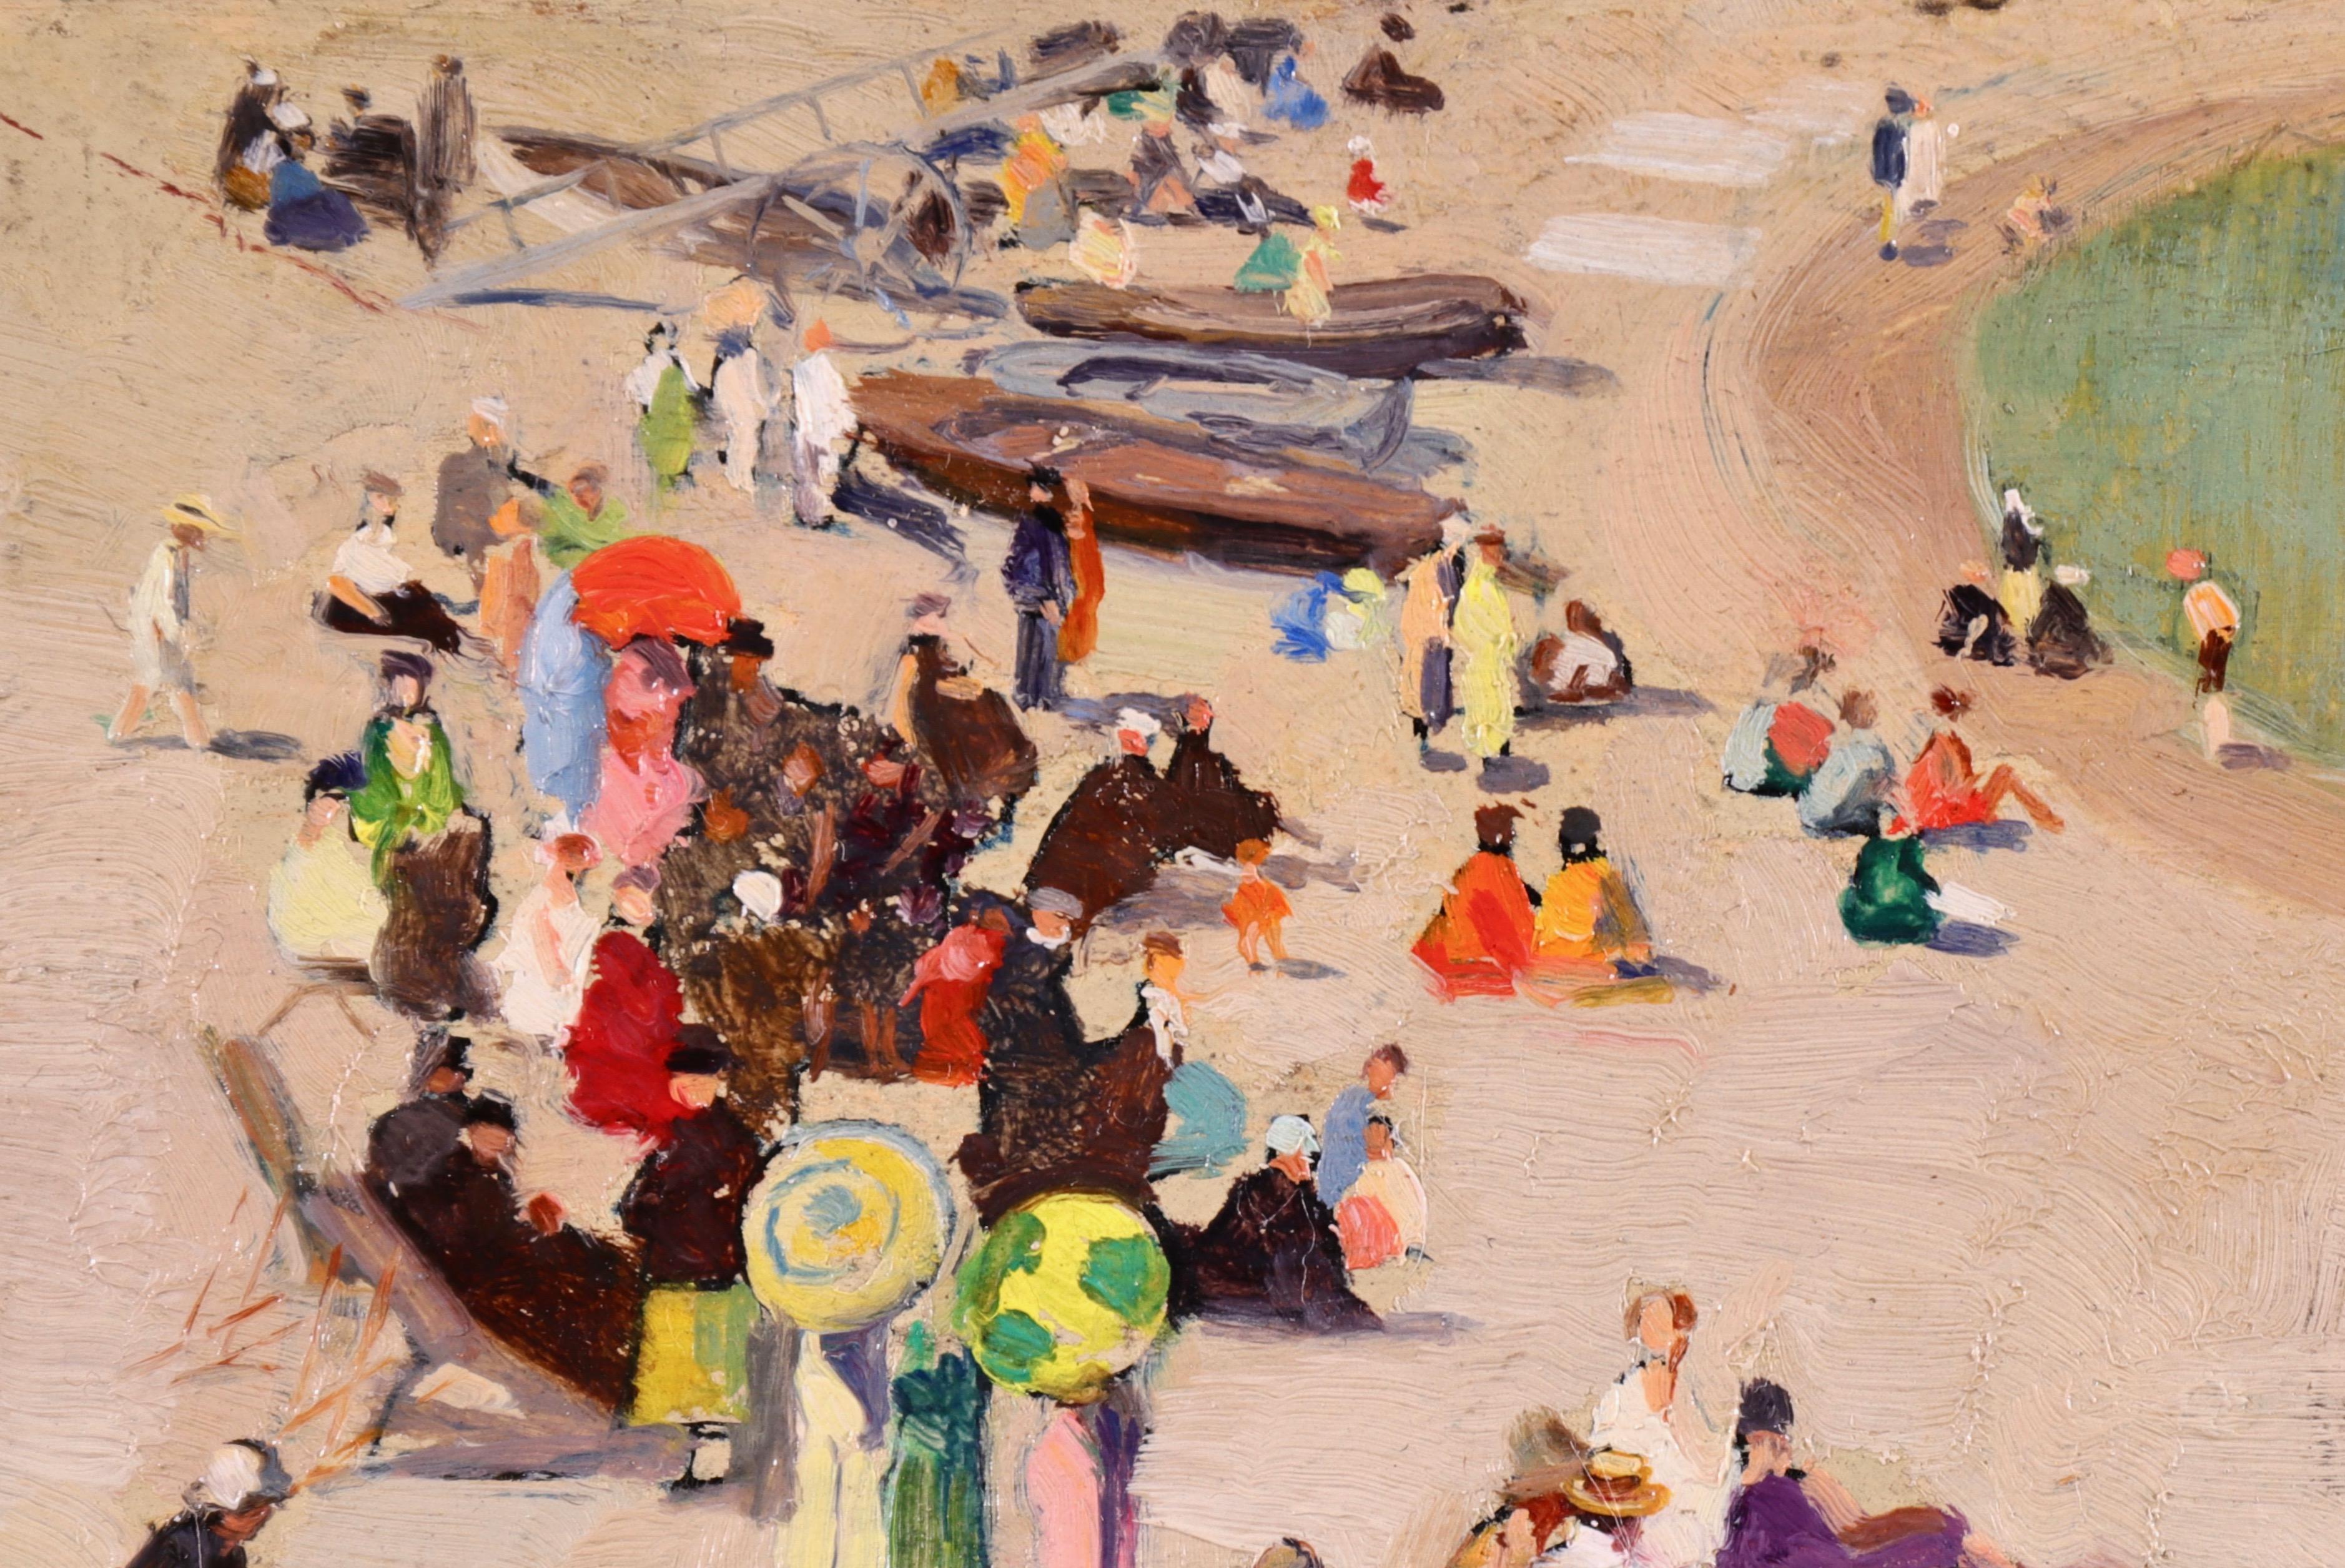 Baigneurs sur la plage - Figurines à l'huile françaises du XIXe siècle dans un paysage par Devambez - Painting de André Devambez